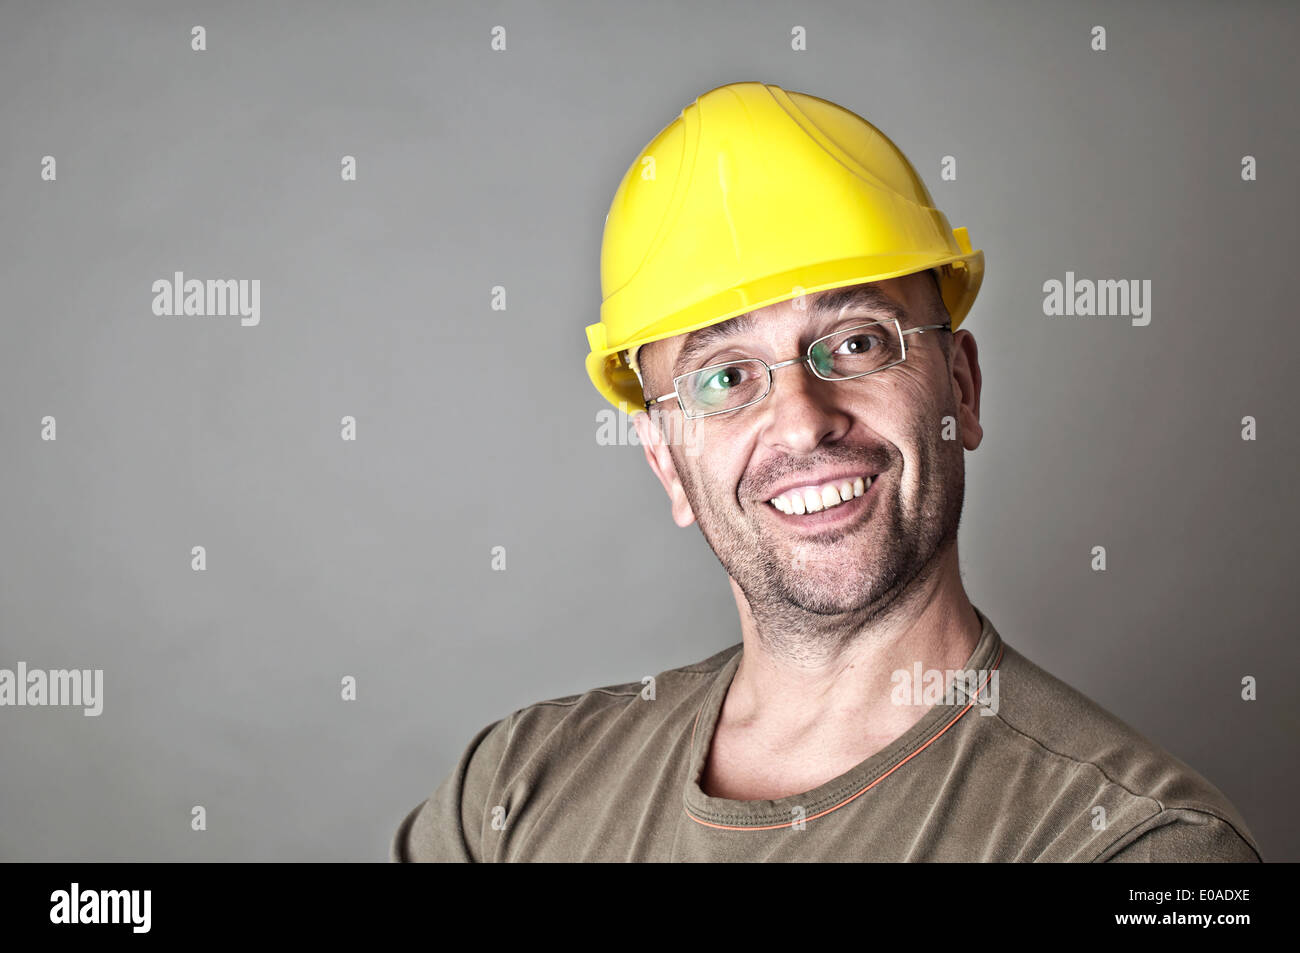 Retrato de un amable trabajador sonriente con gafas y sombrero duro amarillo Foto de stock